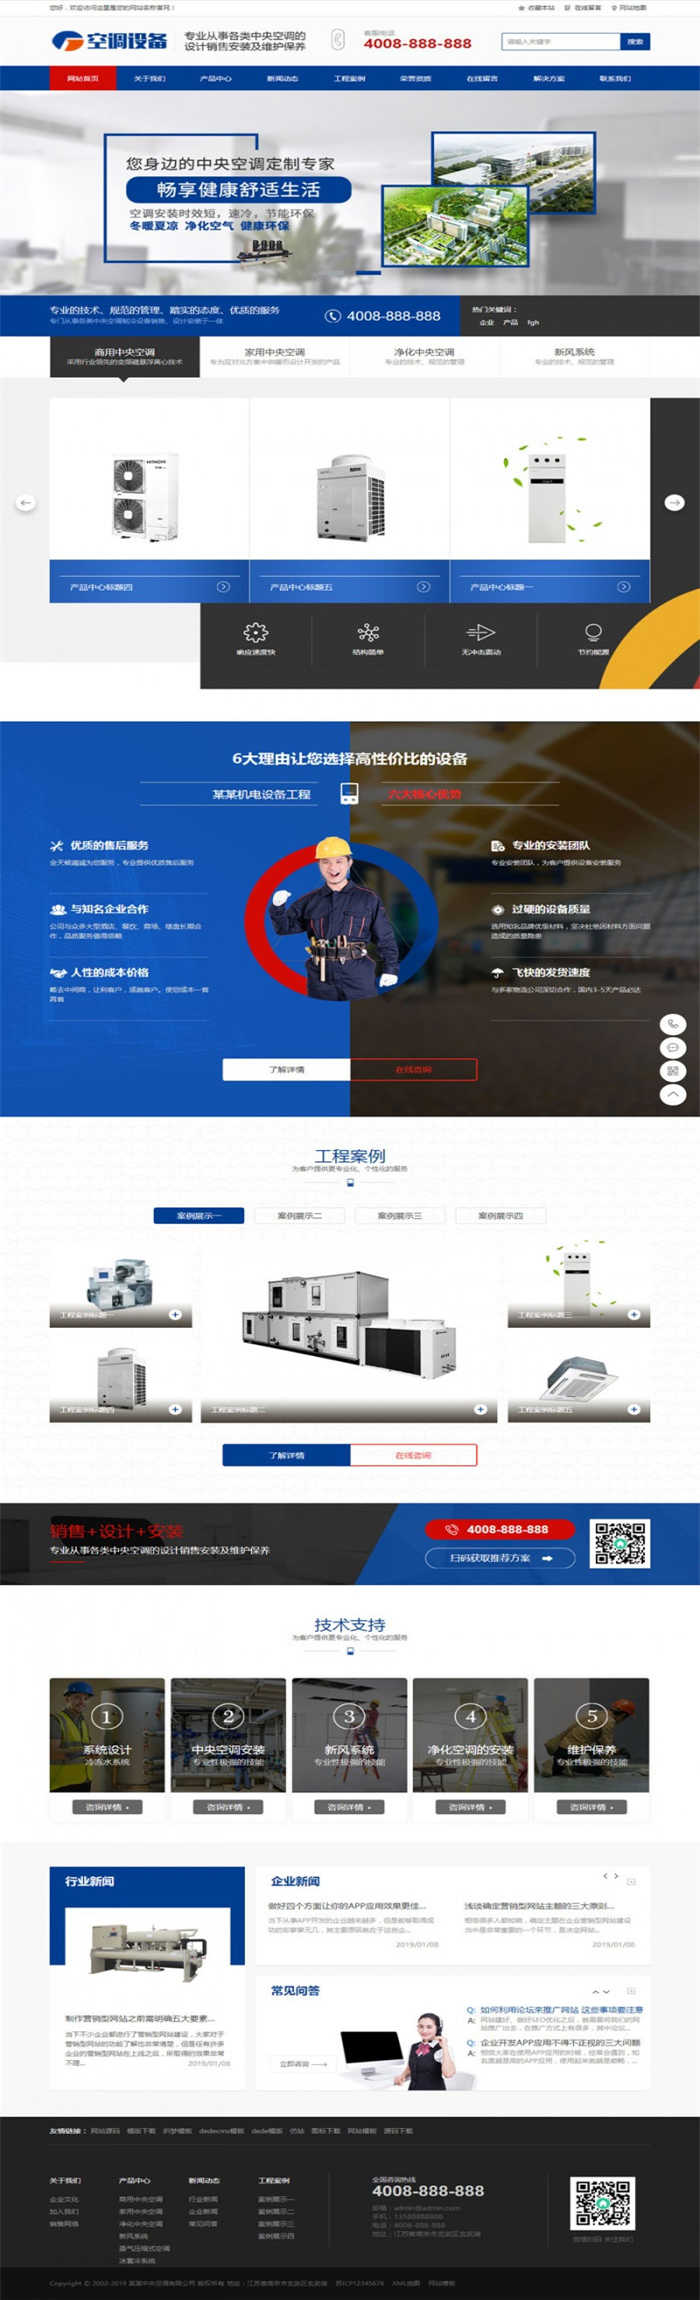 [精品源码]织梦dedecms蓝色营销型空调制冷设备公司网站模板(带手机移动端)插图